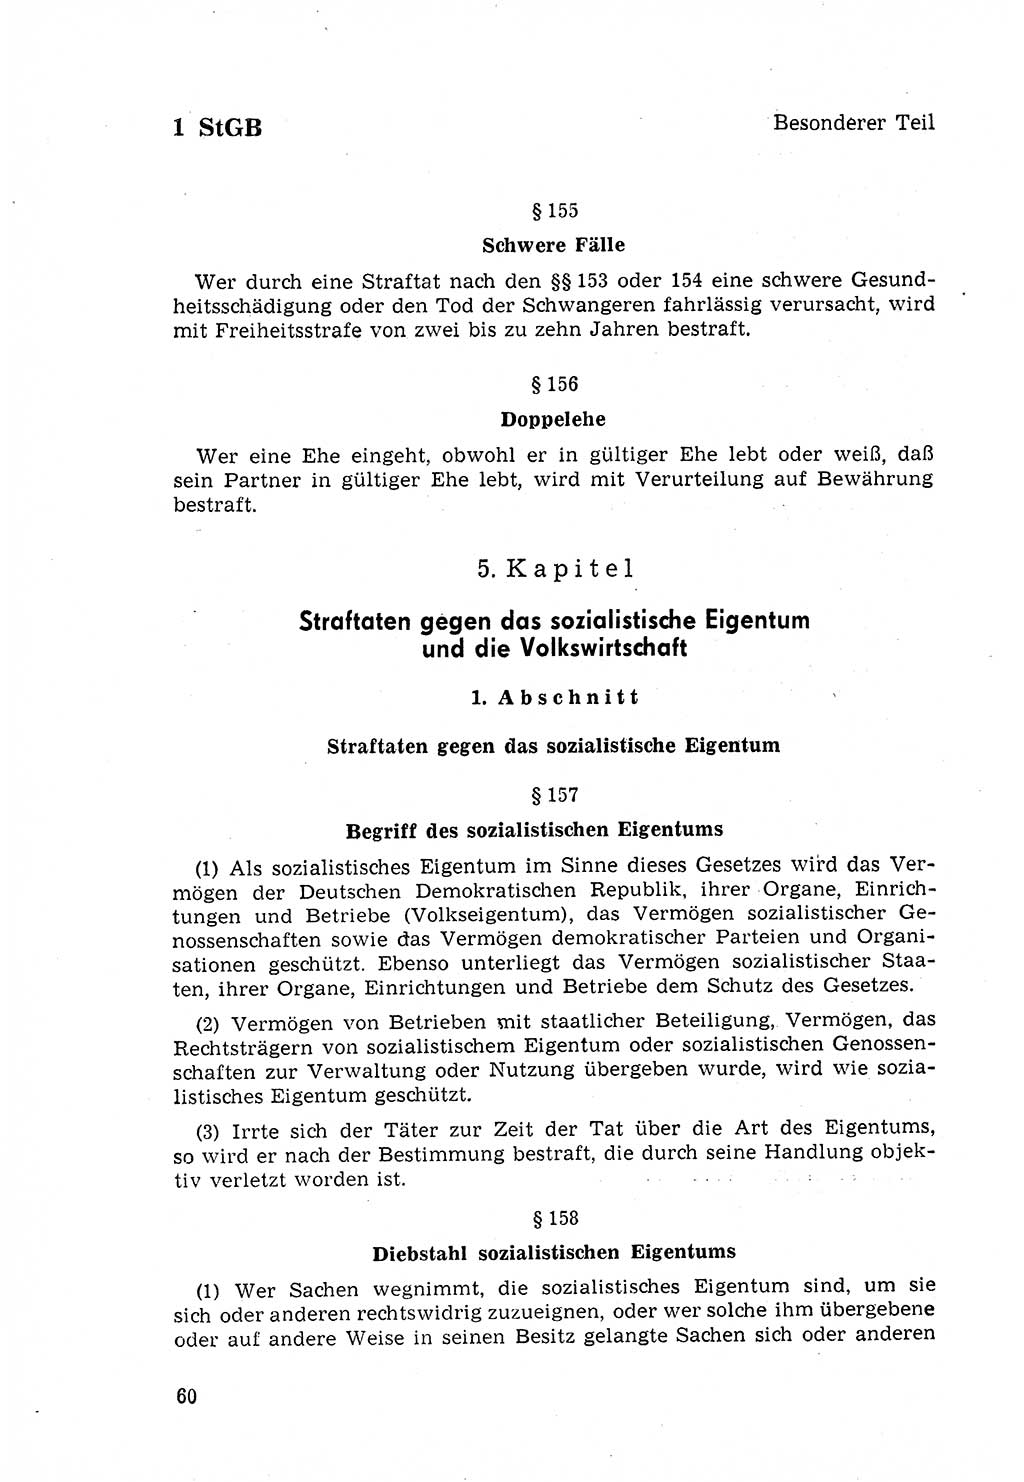 Strafgesetzbuch (StGB) der Deutschen Demokratischen Republik (DDR) 1968, Seite 60 (StGB DDR 1968, S. 60)